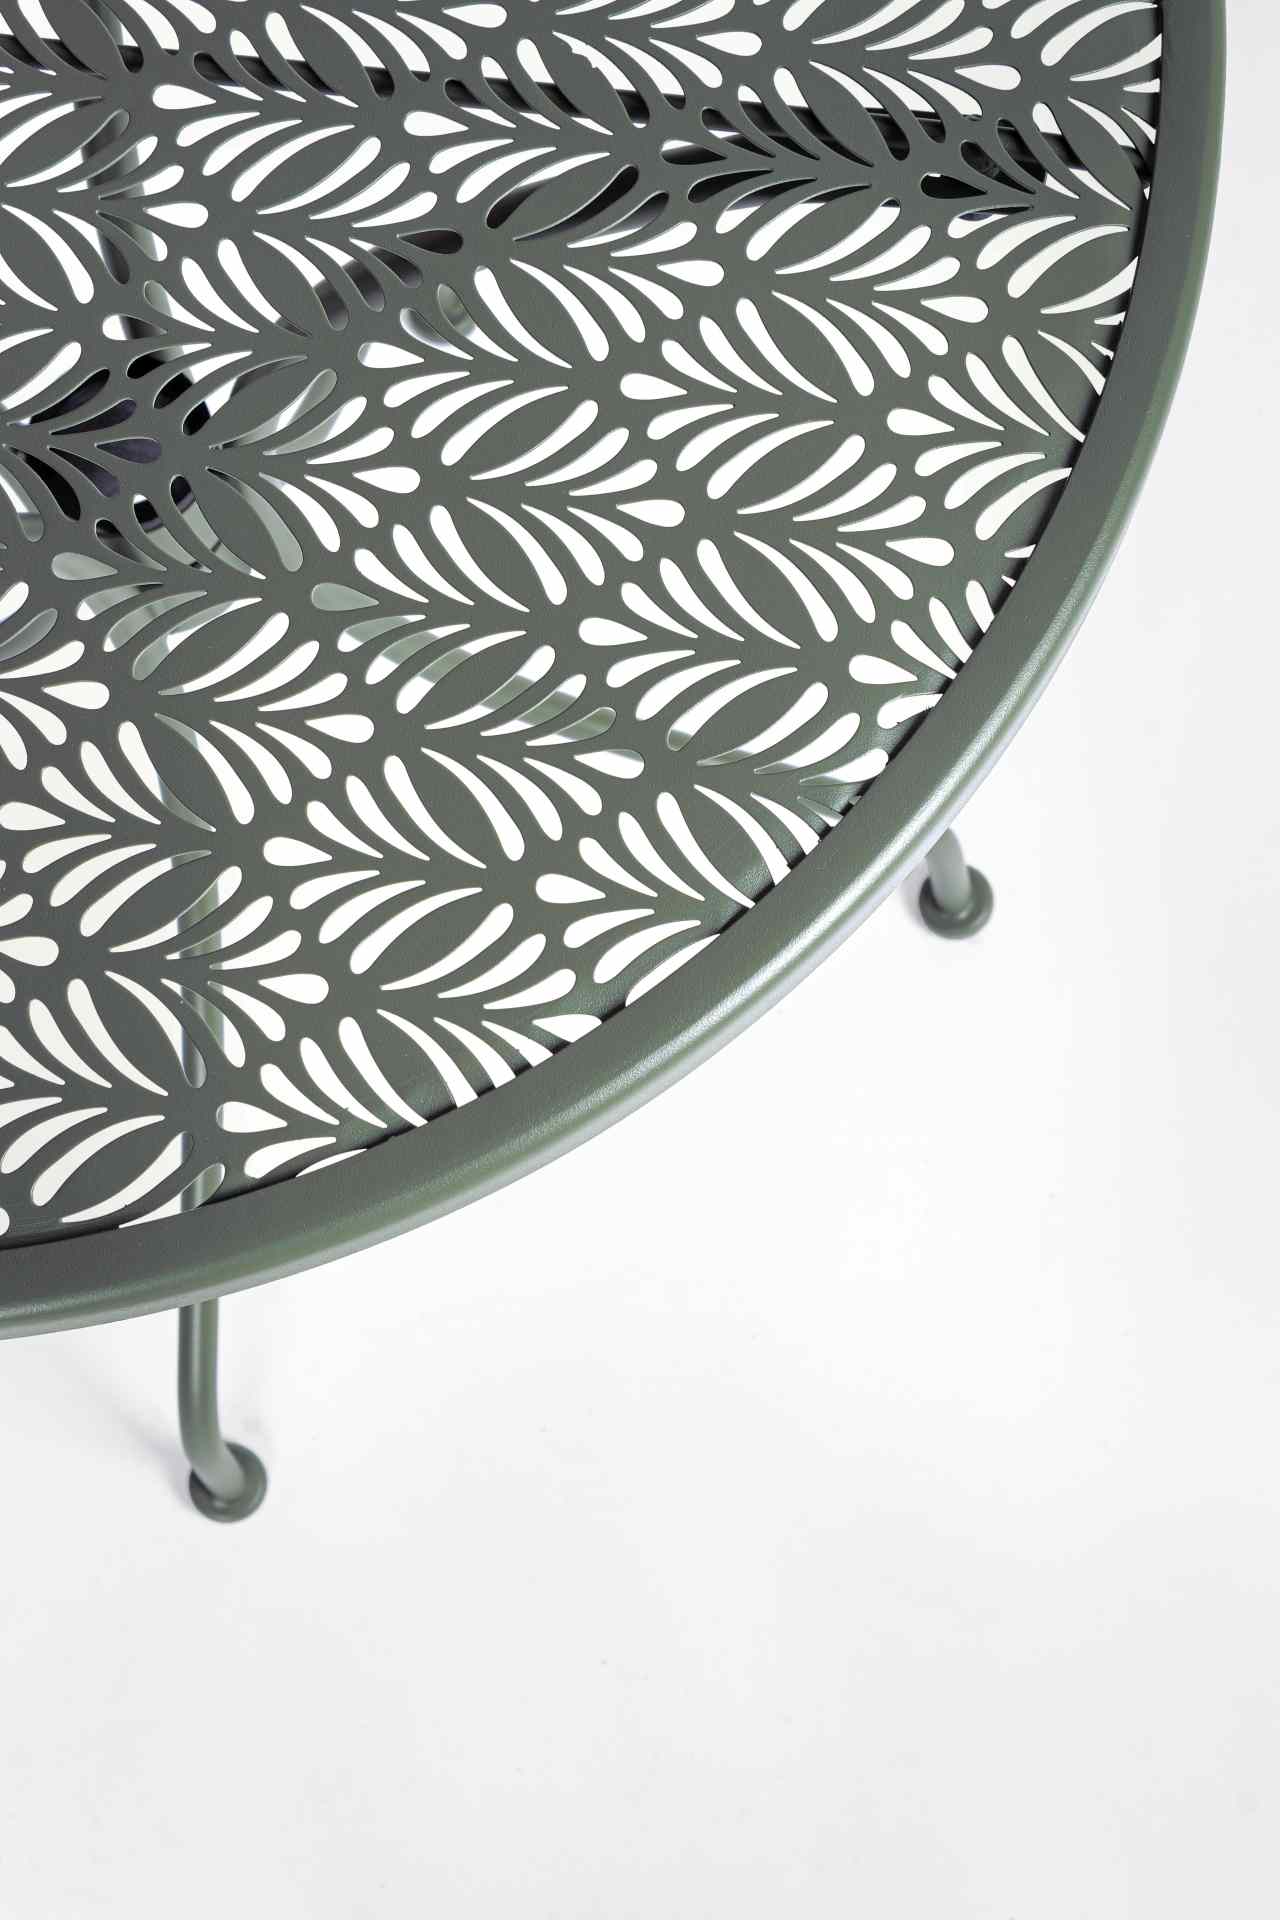 Der Gartentisch Lizette überzeugt mit seinem klassischen Design. Gefertigt wurde er aus Aluminium, welches einen grünen Farbton besitzt. Das Gestell ist aus auch Aluminium und hat eine grüne Farbe. Der Tisch verfügt über einen Durchmesser von 60 cm und is